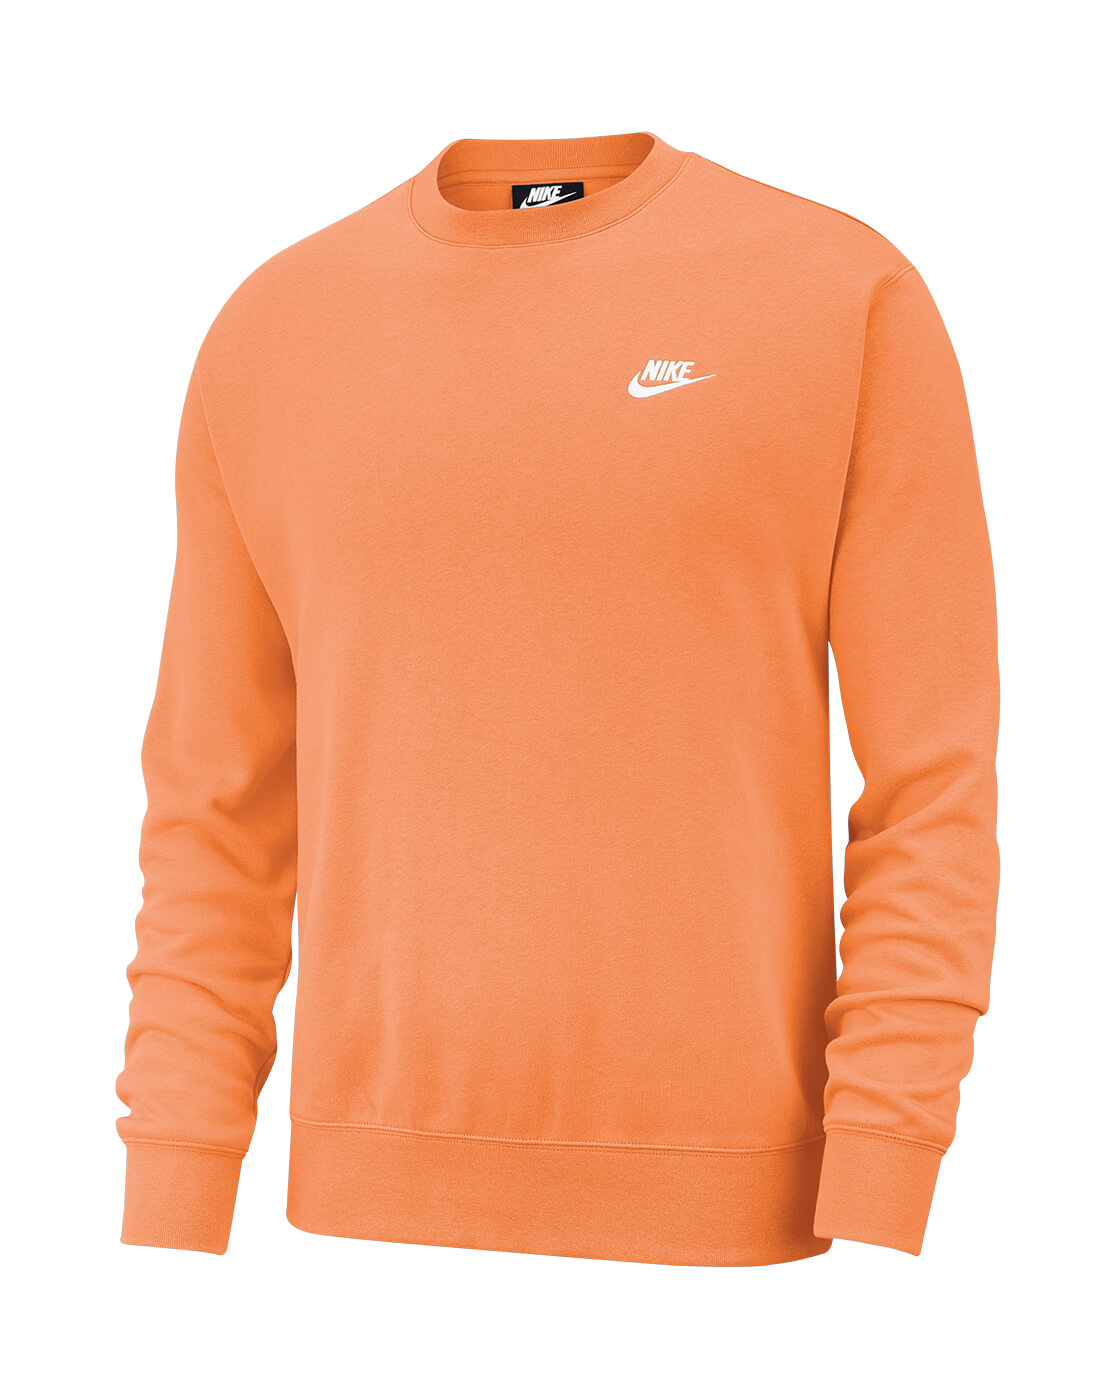 nike sweater orange